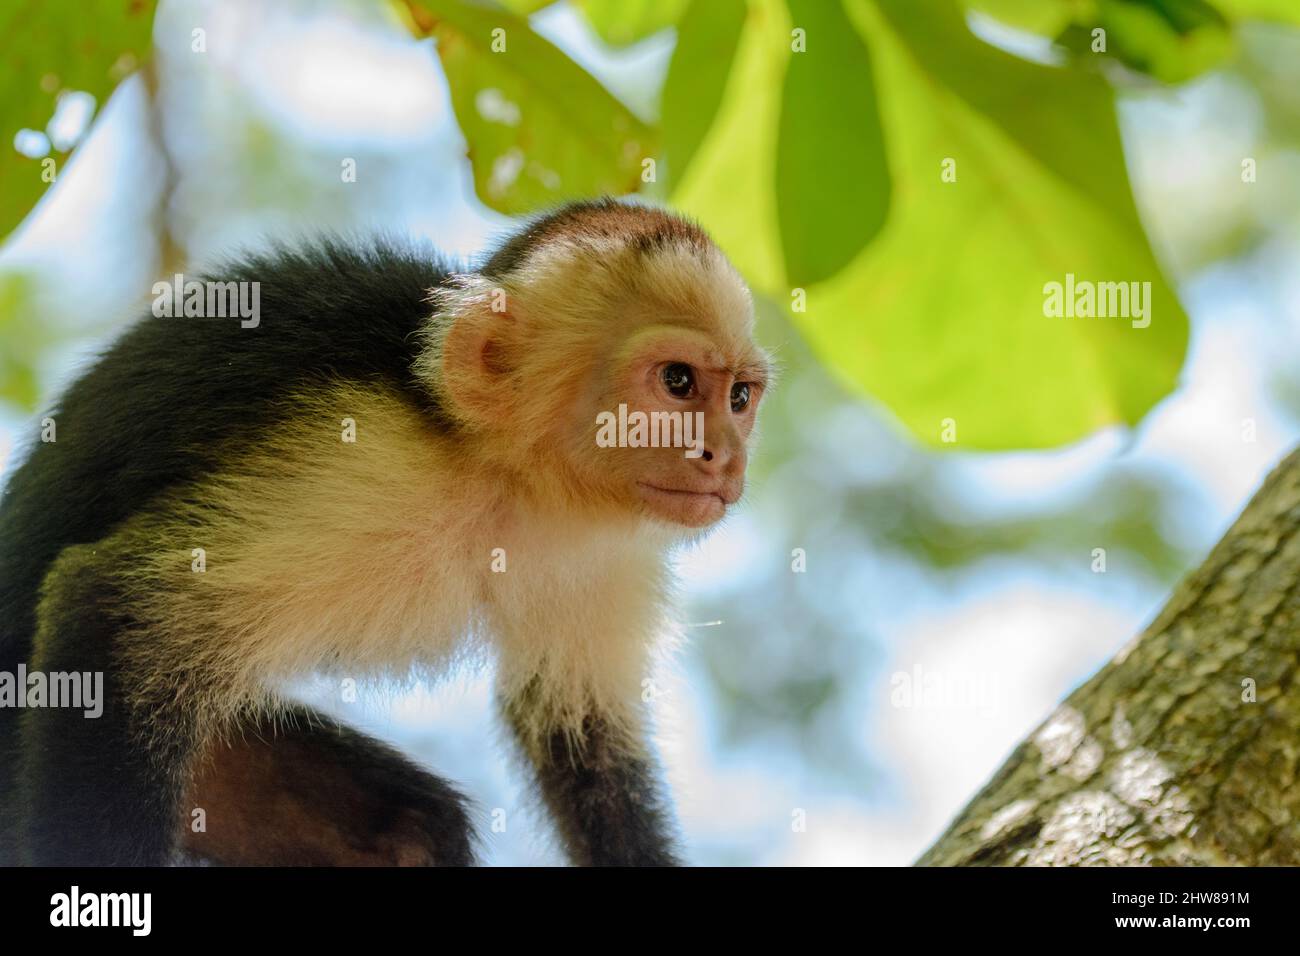 Capuchino panameño de cara blanca (imitador de Cebus), Parque Nacional Manuel Antonio, Provincia de Puntarenas, Quepos, Costa Rica, Centroamérica. Foto de stock